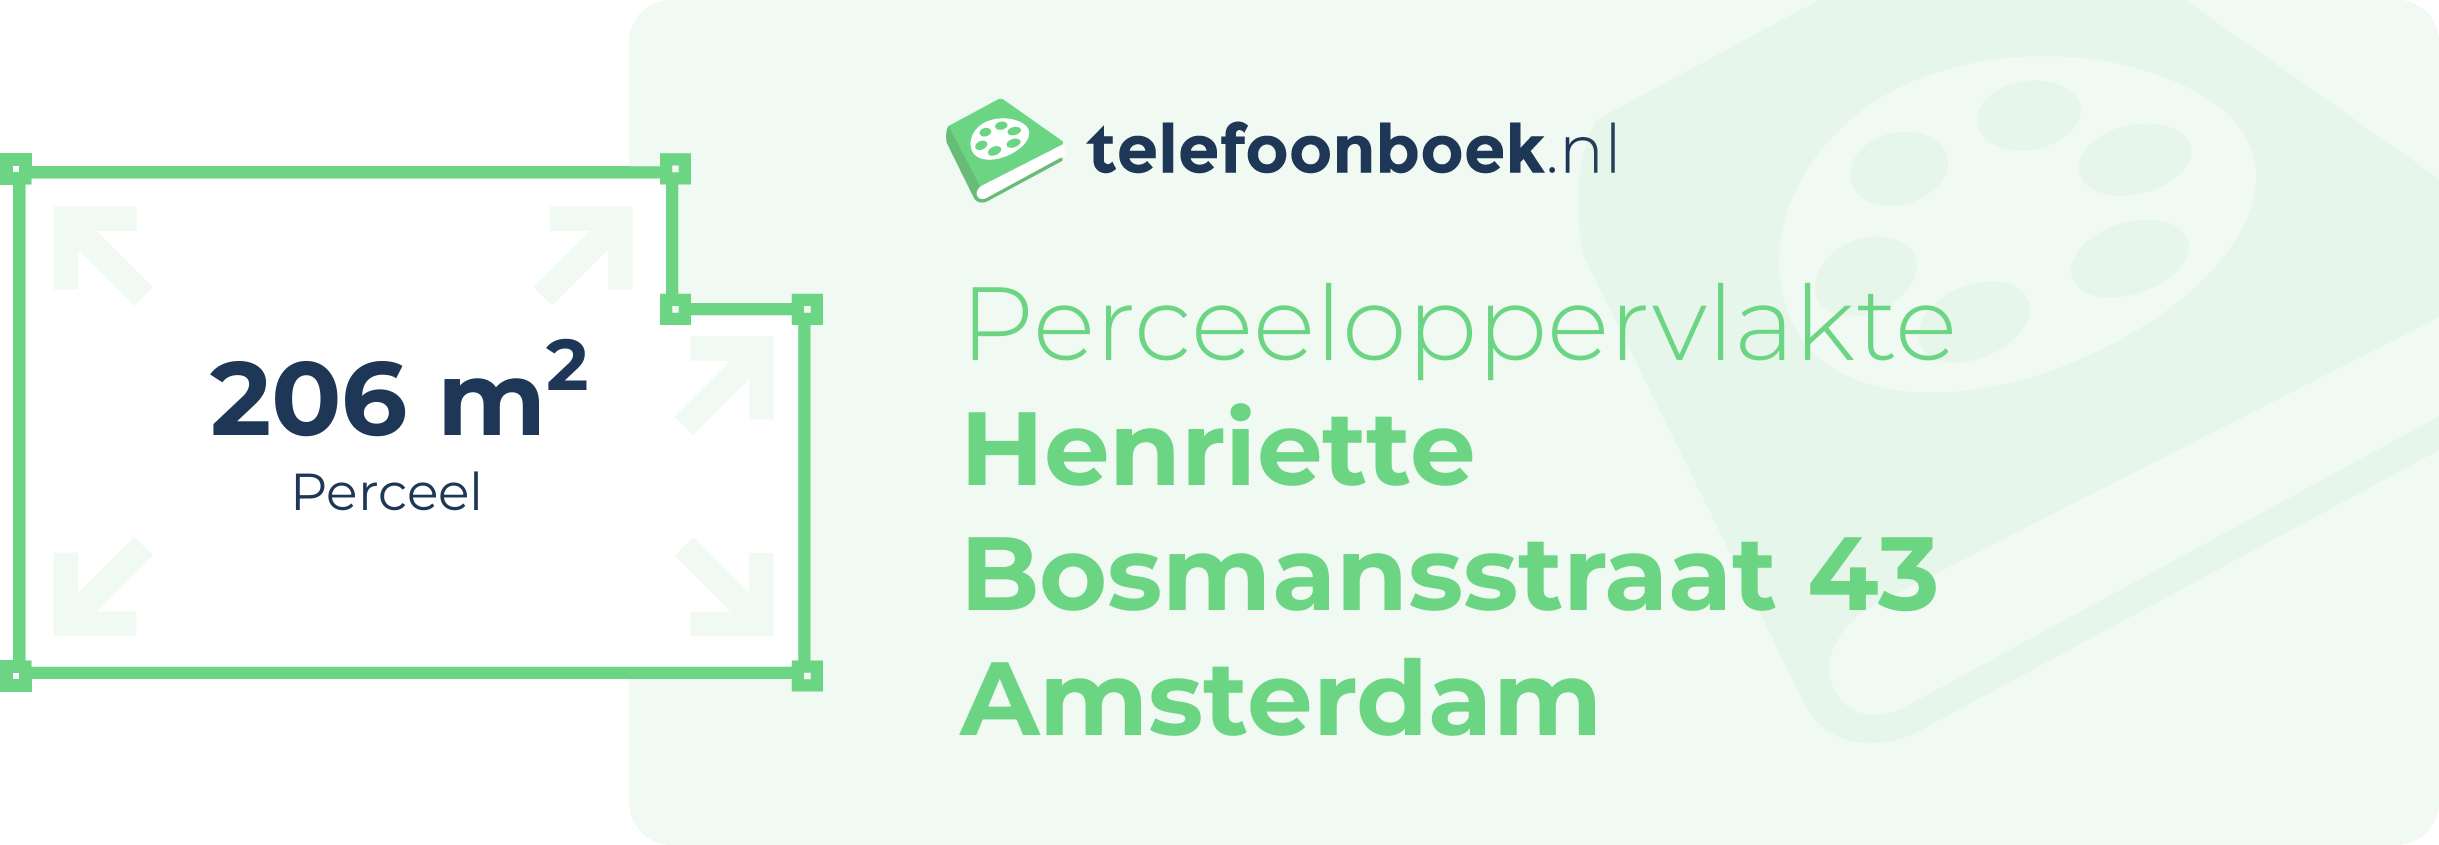 Perceeloppervlakte Henriette Bosmansstraat 43 Amsterdam